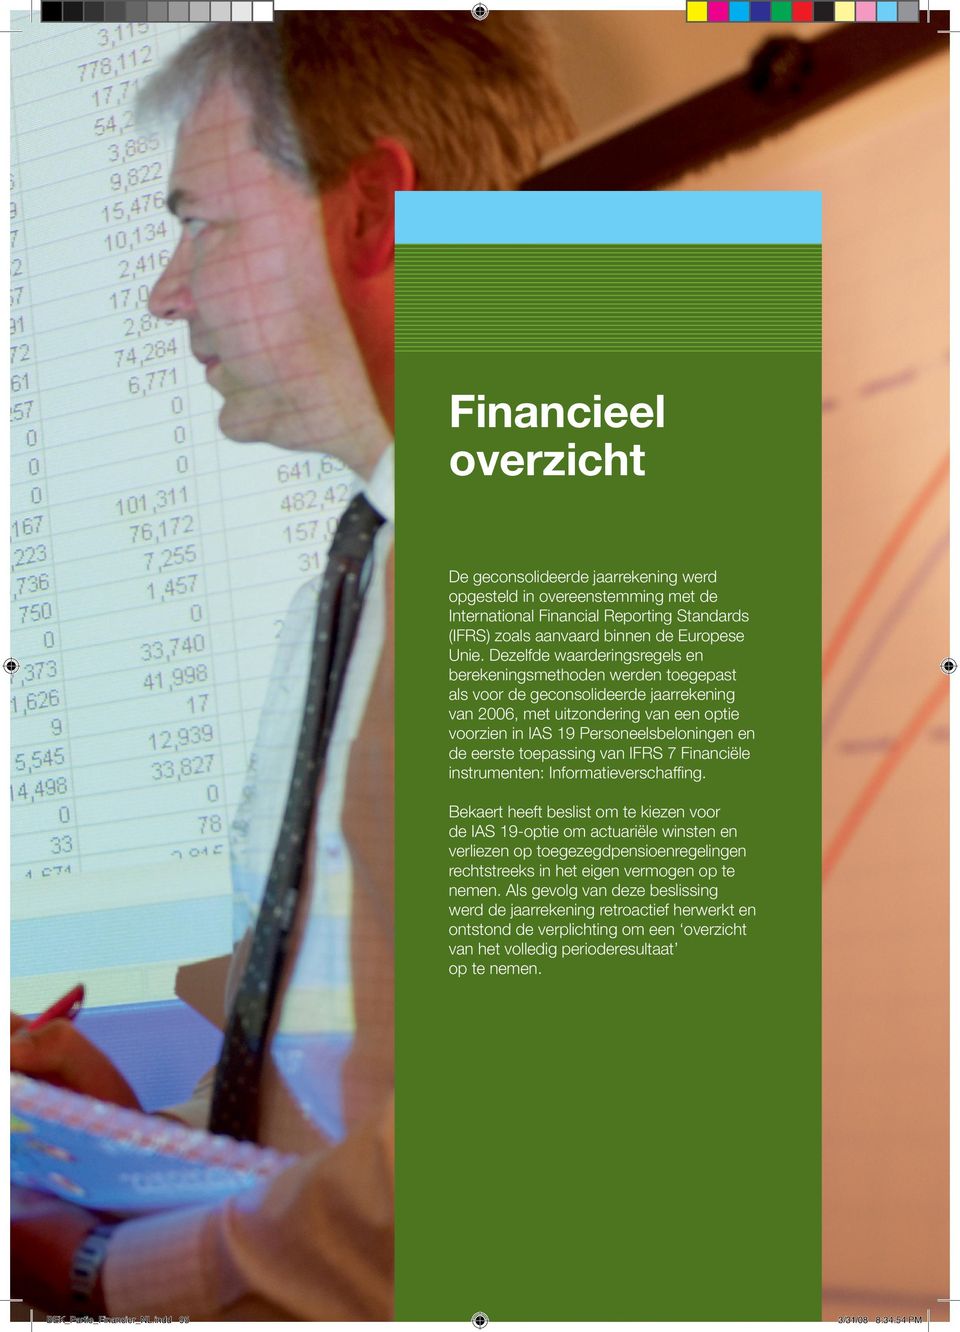 eerste toepassing van IFRS 7 Financiële instrumenten: Informatieverschaffing.